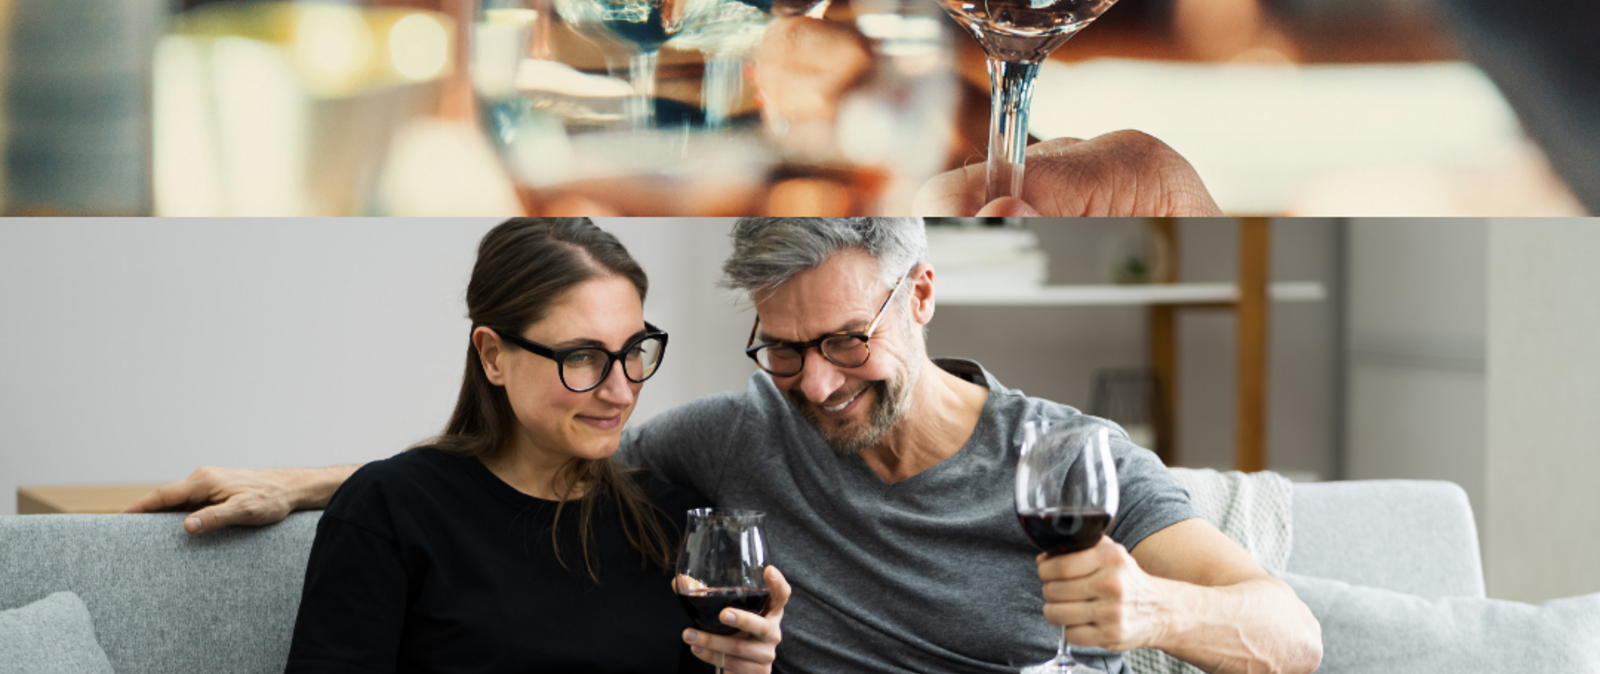 Lernen Sie sächsische Weine und die sächsische Trinkkultur kennen! Unsere Weinexperten verraten Ihnen Tipps und Tricks zum genussvollen Tasting auf der heimischen Couch.